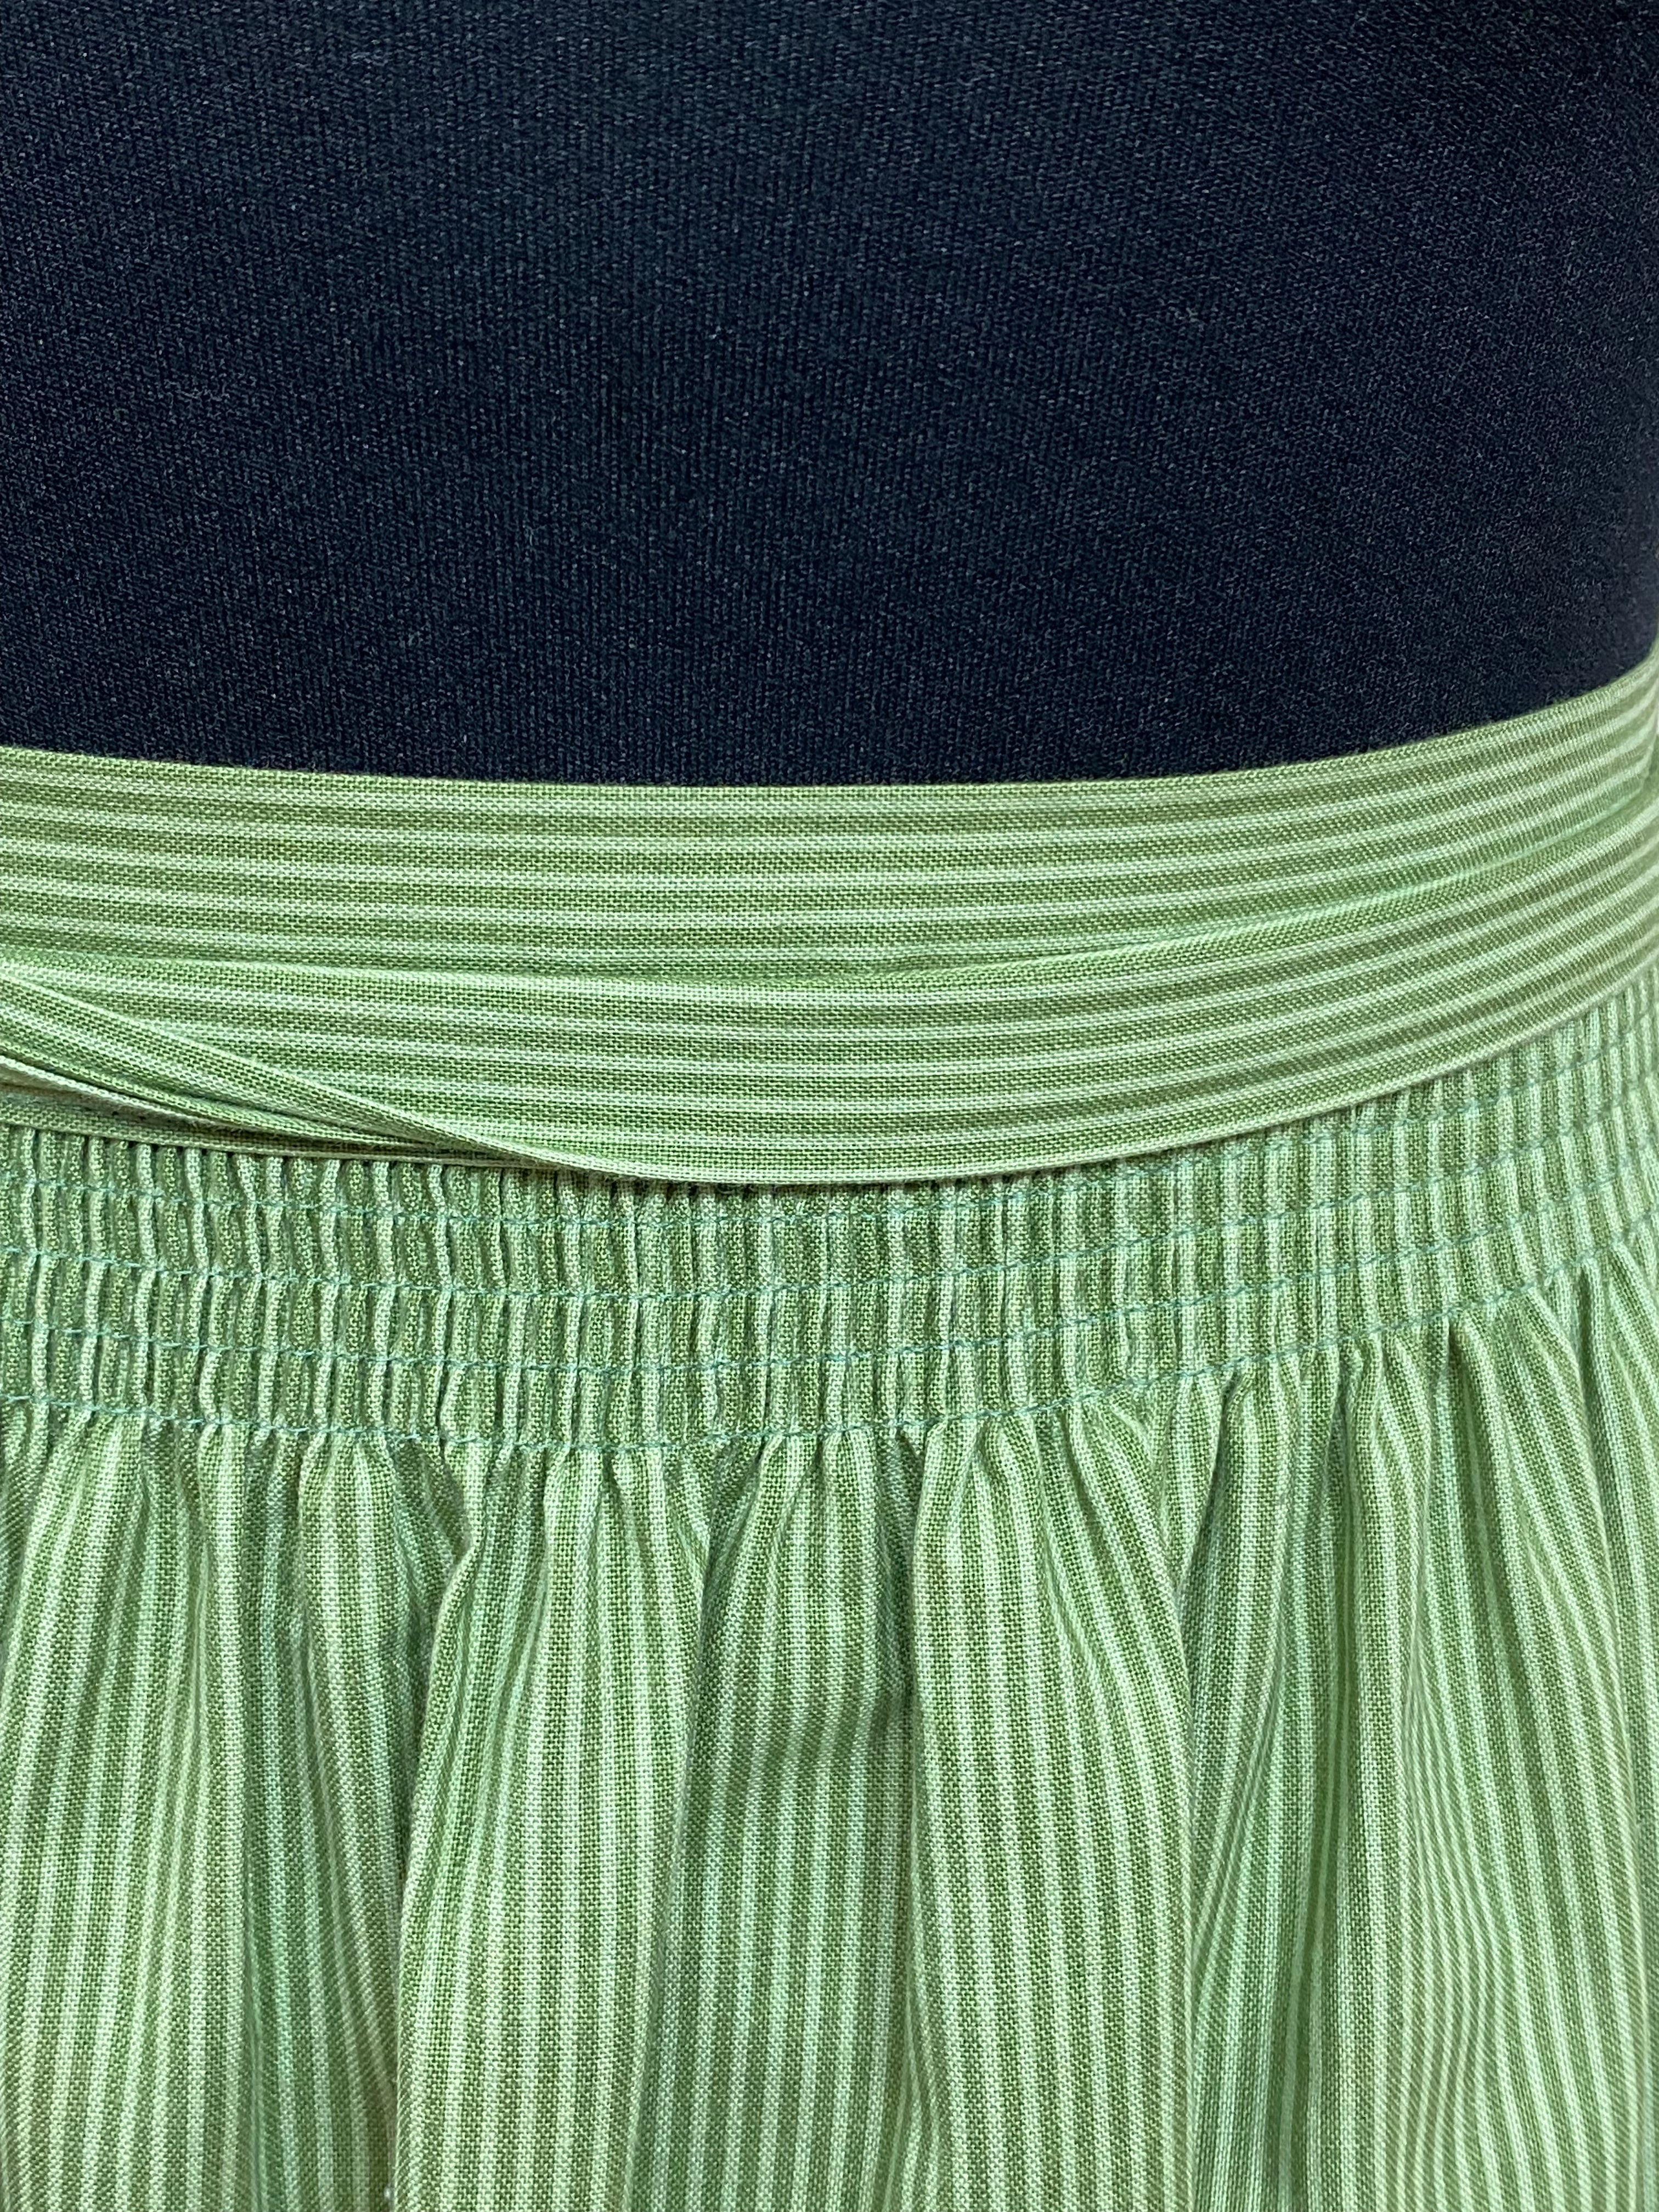 Mittellange Vintage Dirndl-Schürze für Trachtenkleid in grün gemustert 76 cm